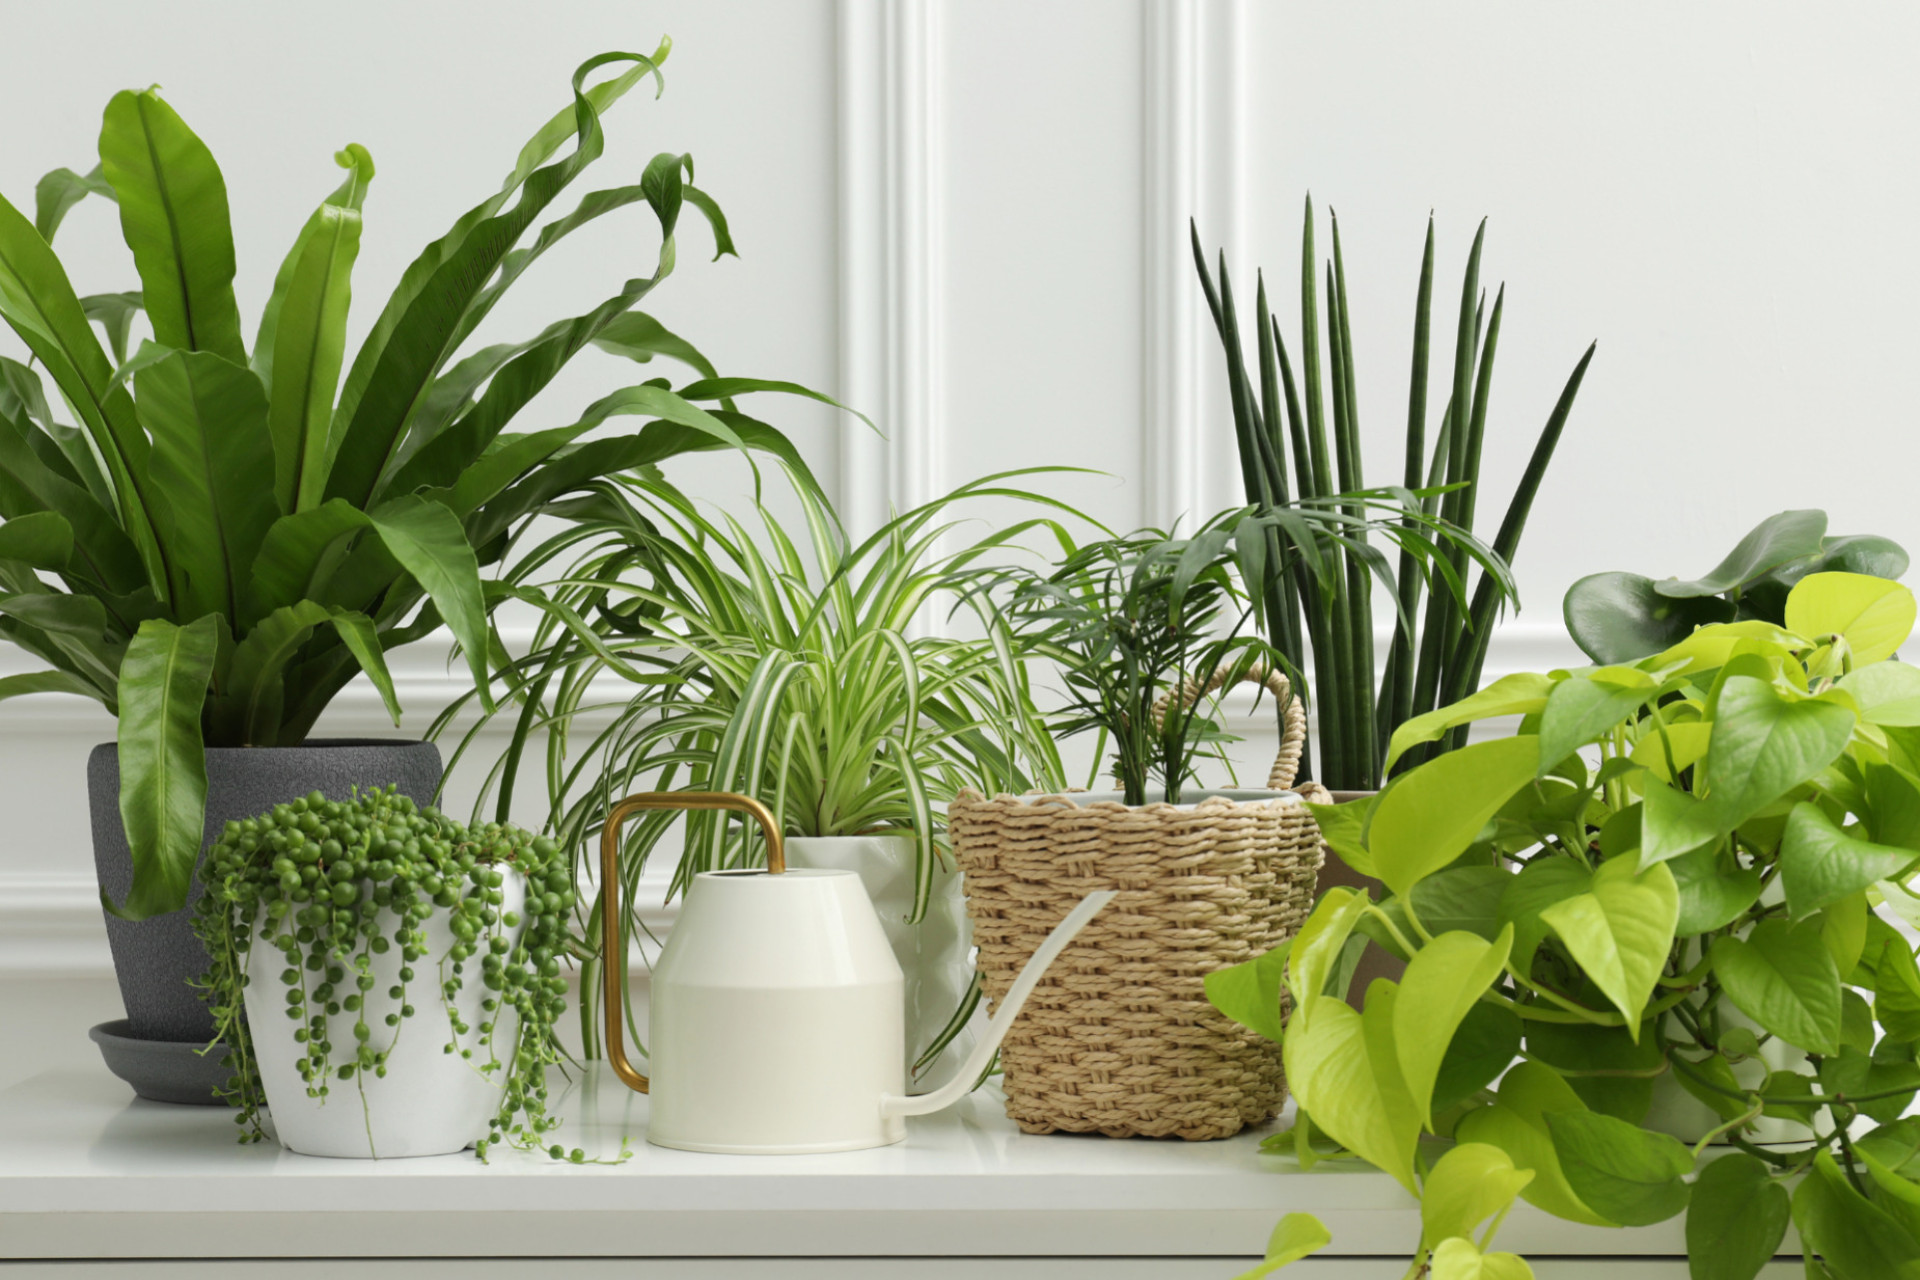 Les plantes sont des cadeaux éco-responsables pour la maison